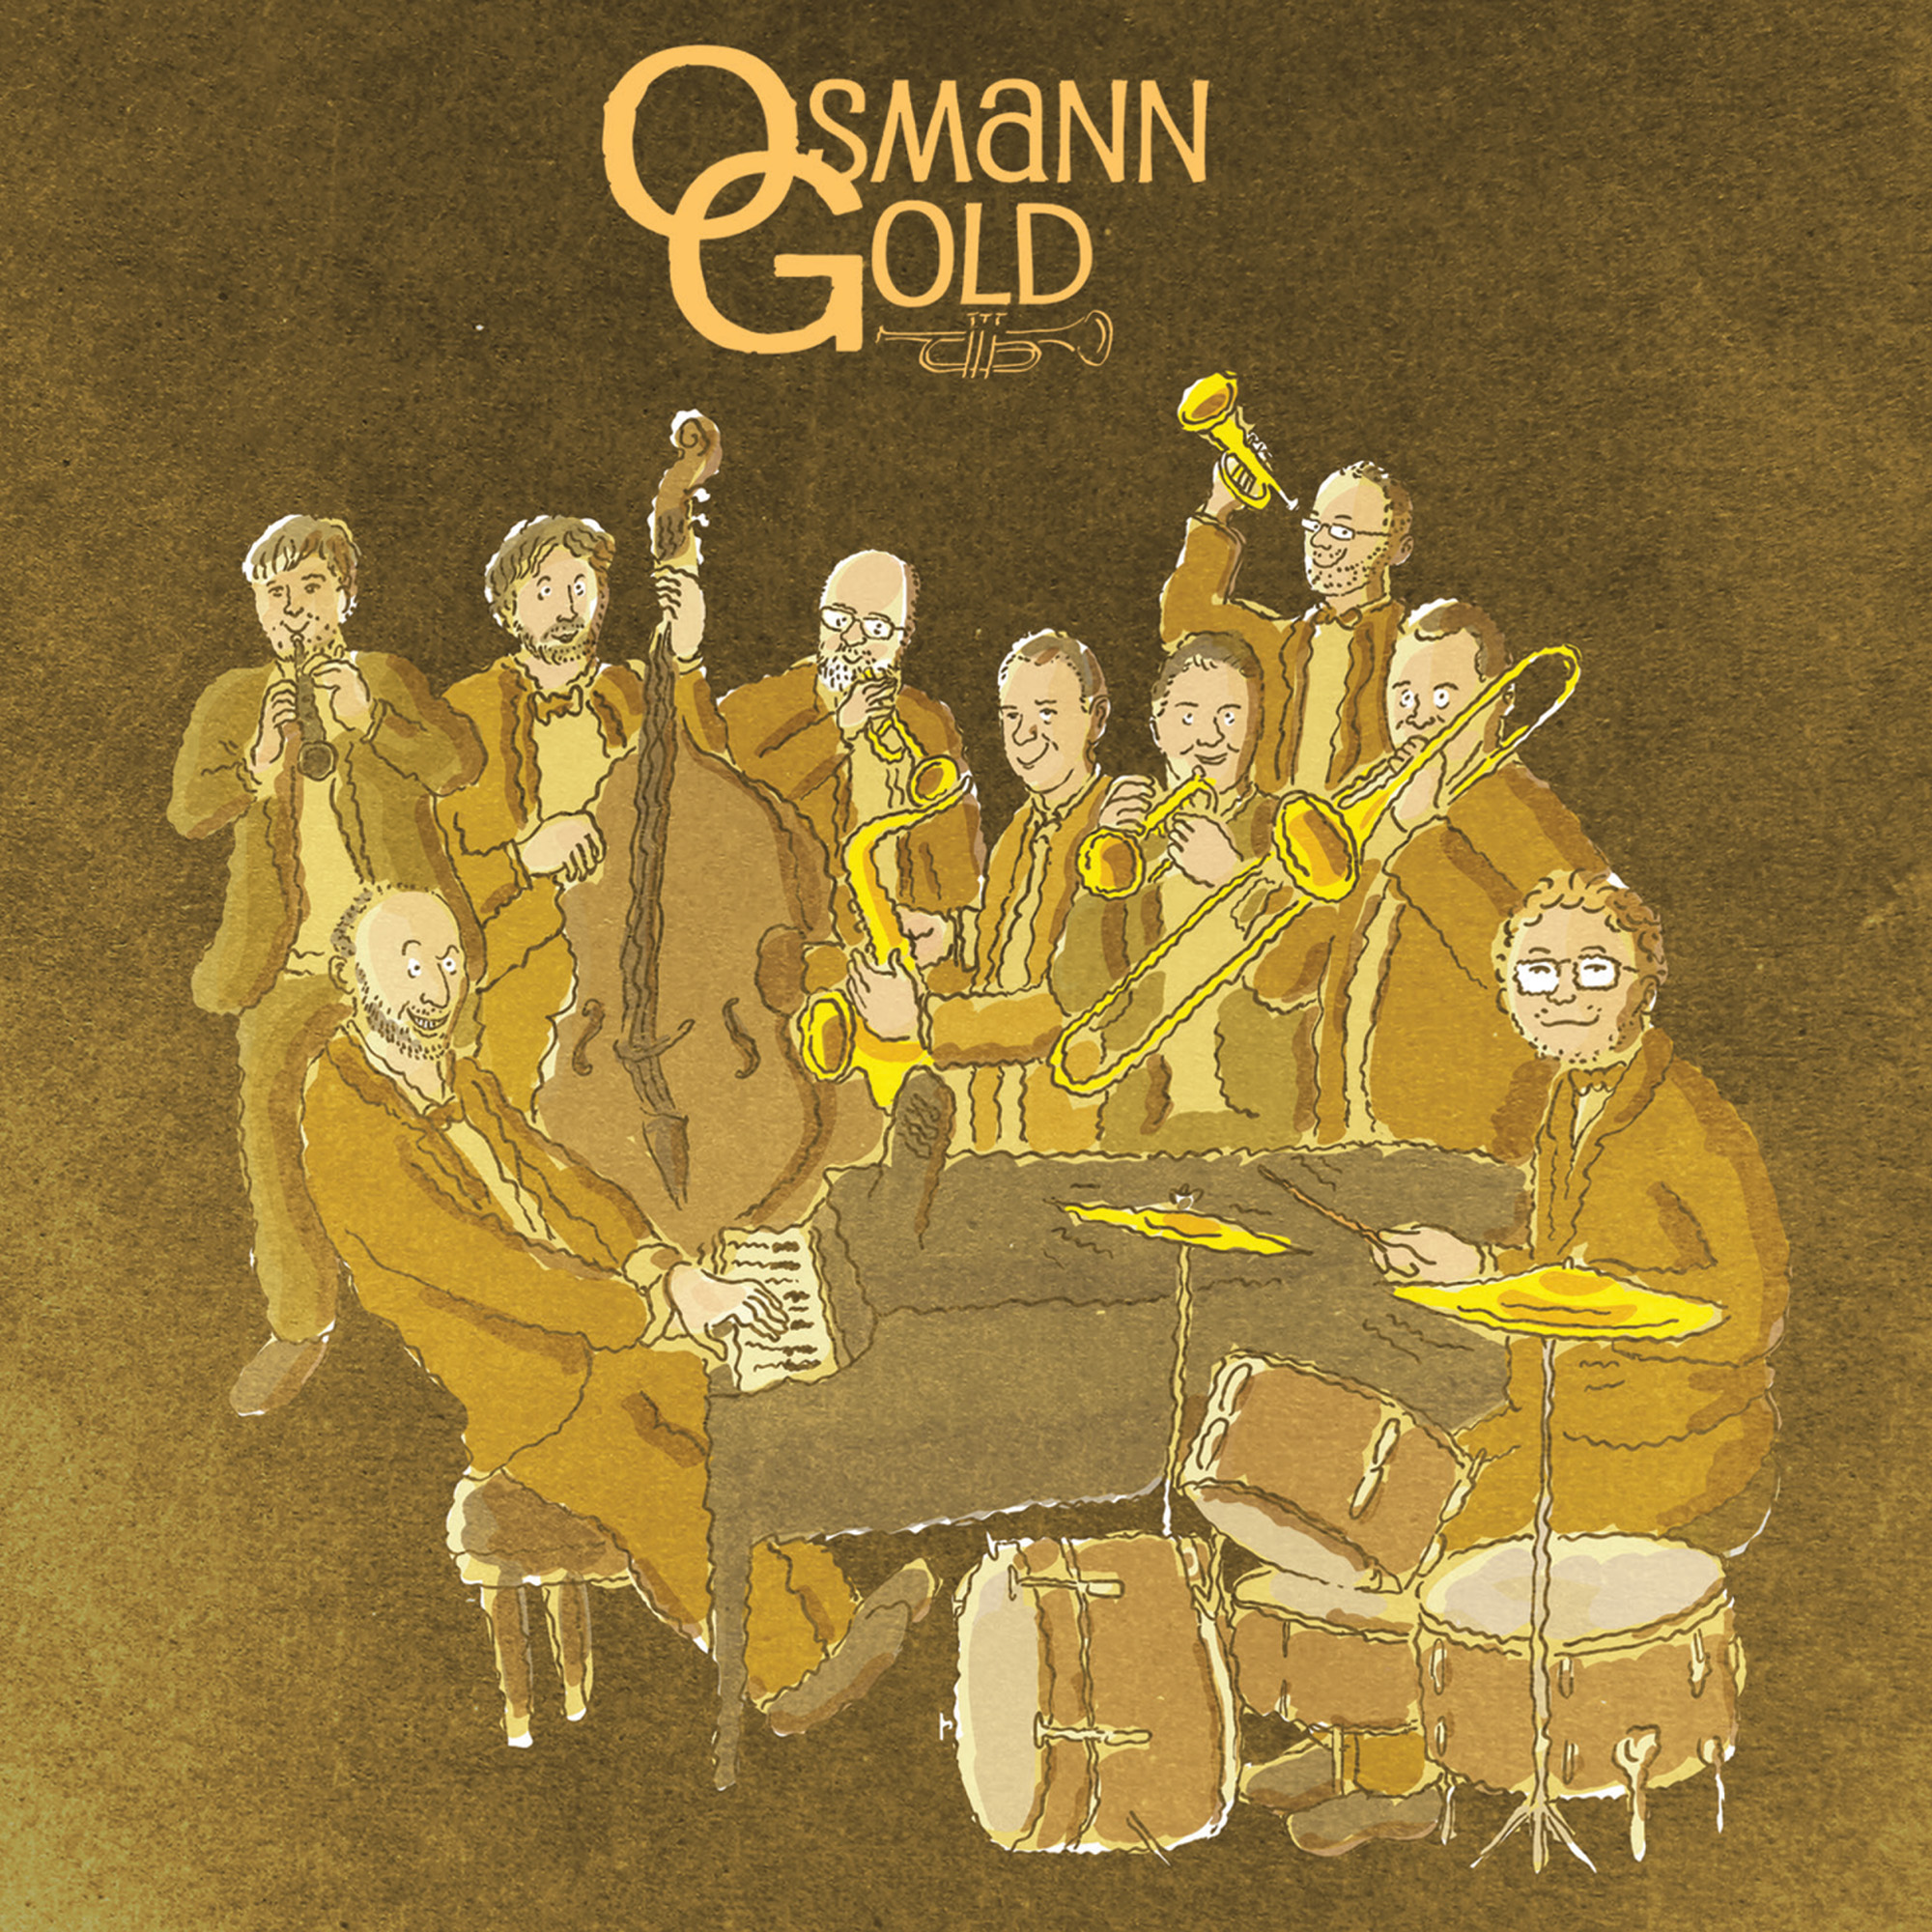 Copertina dell'album OsmannGold realizzata da Michele Staino. Il disegno rappresenta l'intera orchestra OsmannGold.